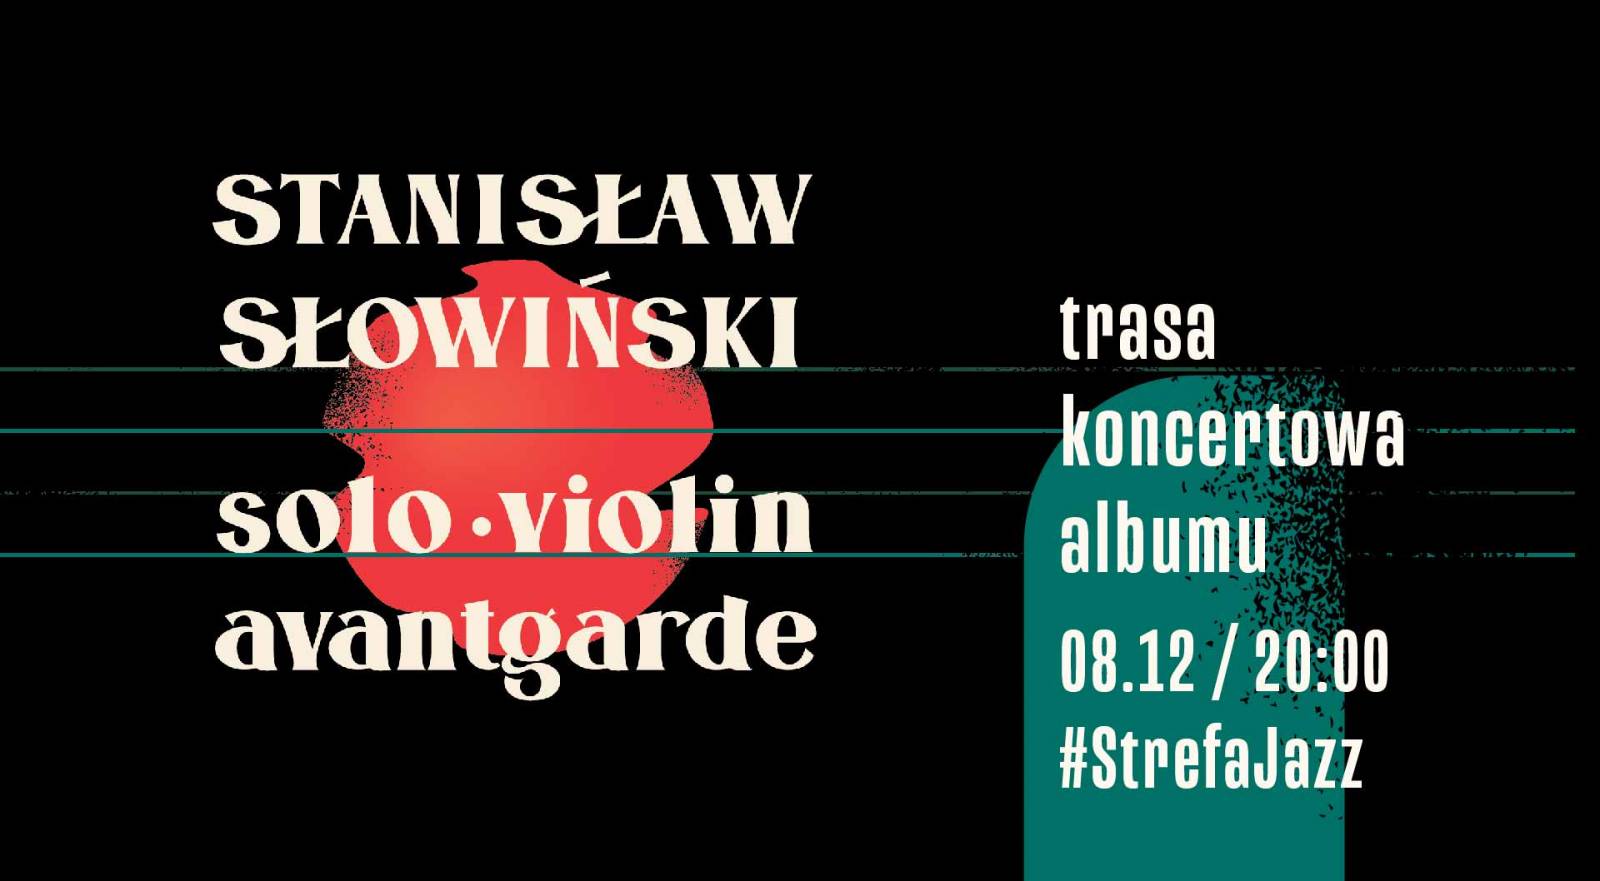 StrefaJazz | Stanisław Słowiński: Solo Violin Avantgarde